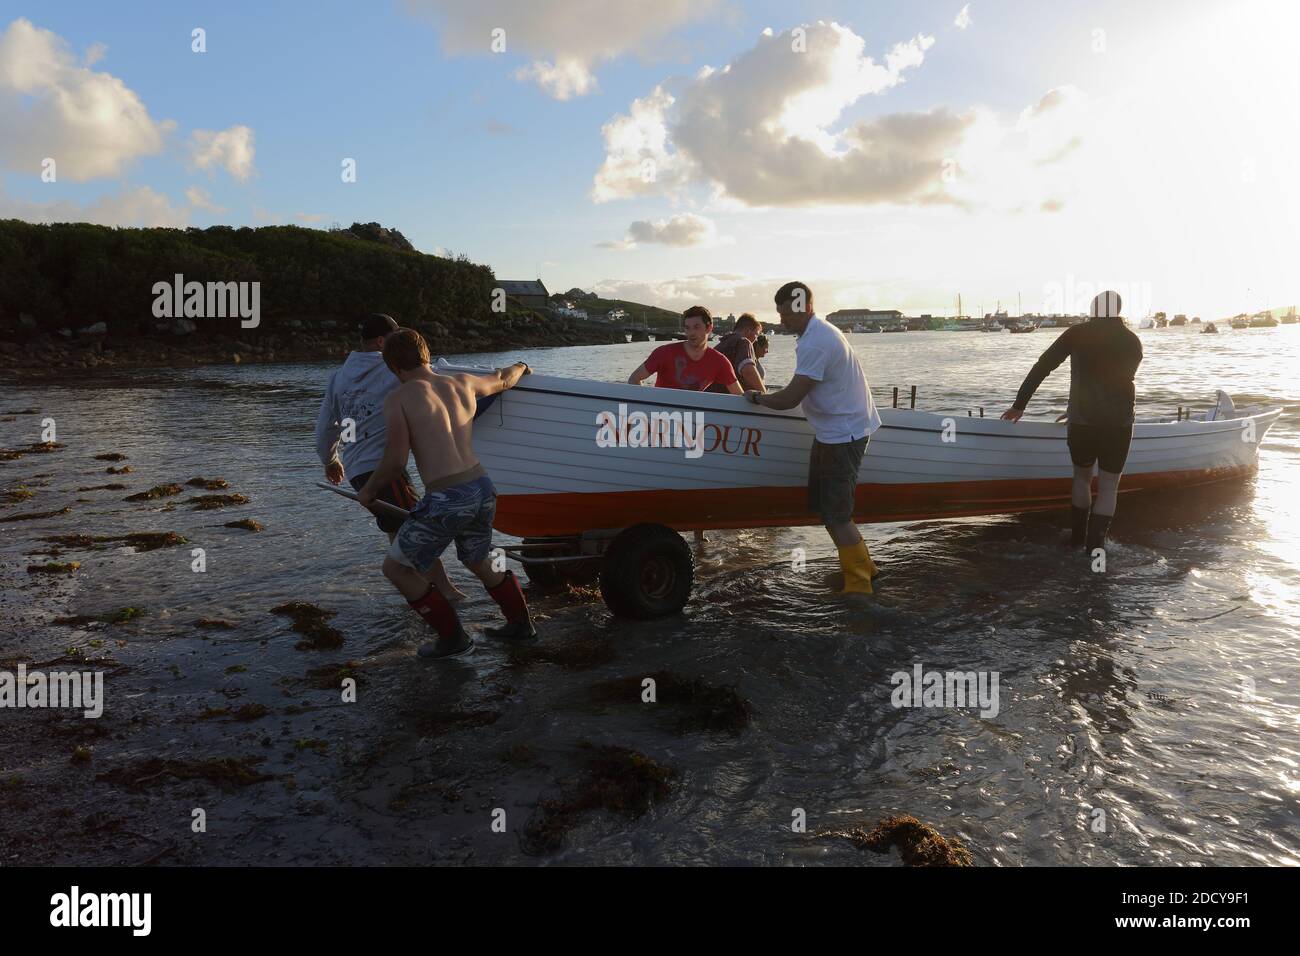 Die Crew von St. Mary’s Gig zieht das Boot nach dem Rennen an Land. Isles of Scilly, Cornwall, Großbritannien. Stockfoto